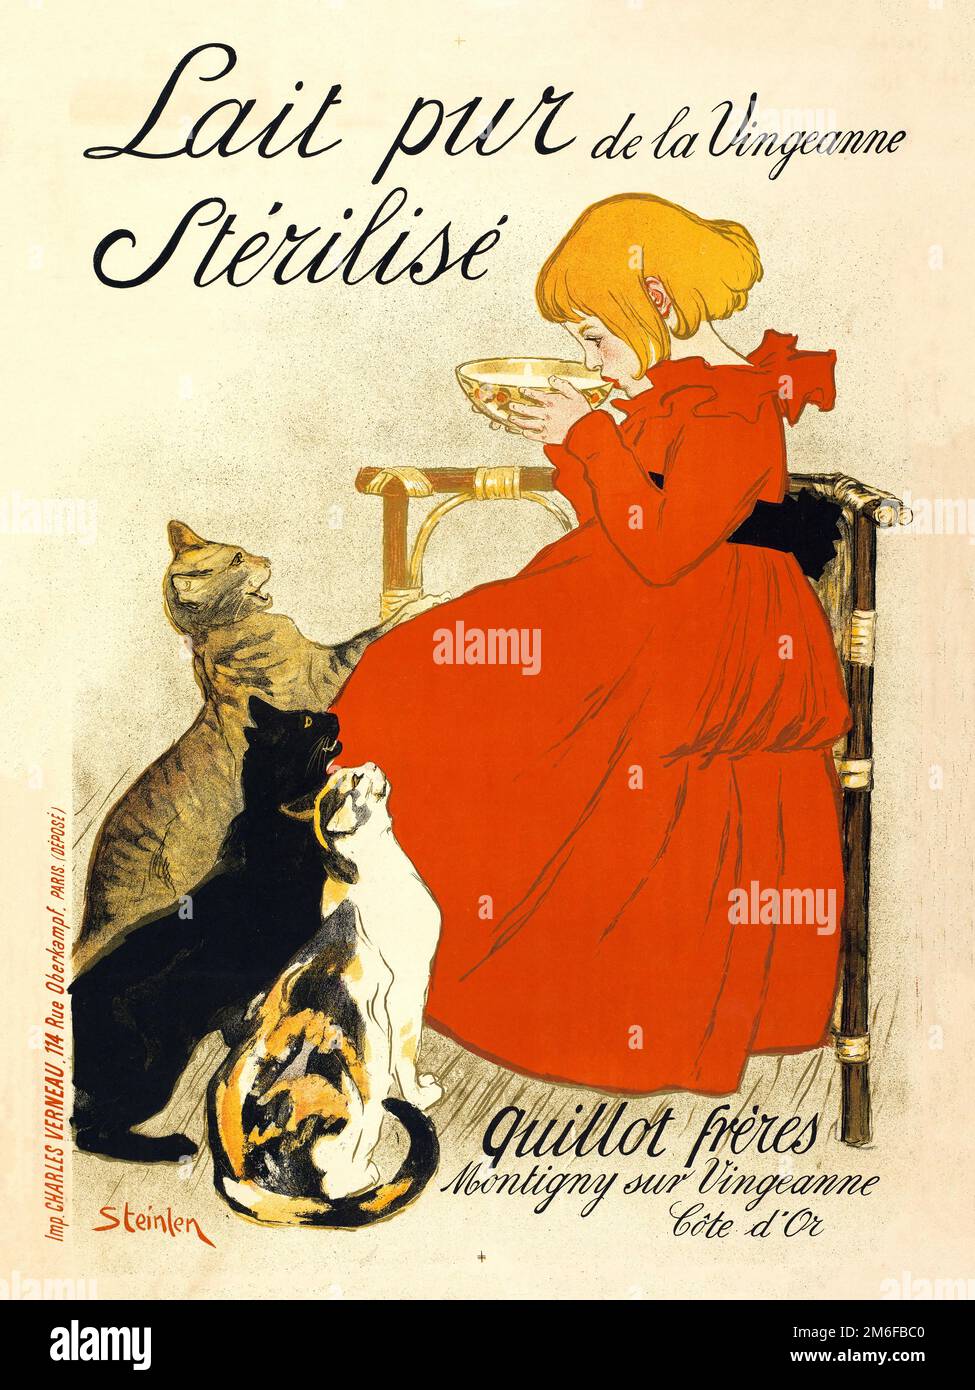 Lait pur de la Vingeanne stérilisé. by Théophile Alexandre Steinlen (1859-1923). Poster published in 1894 in France. Stock Photo